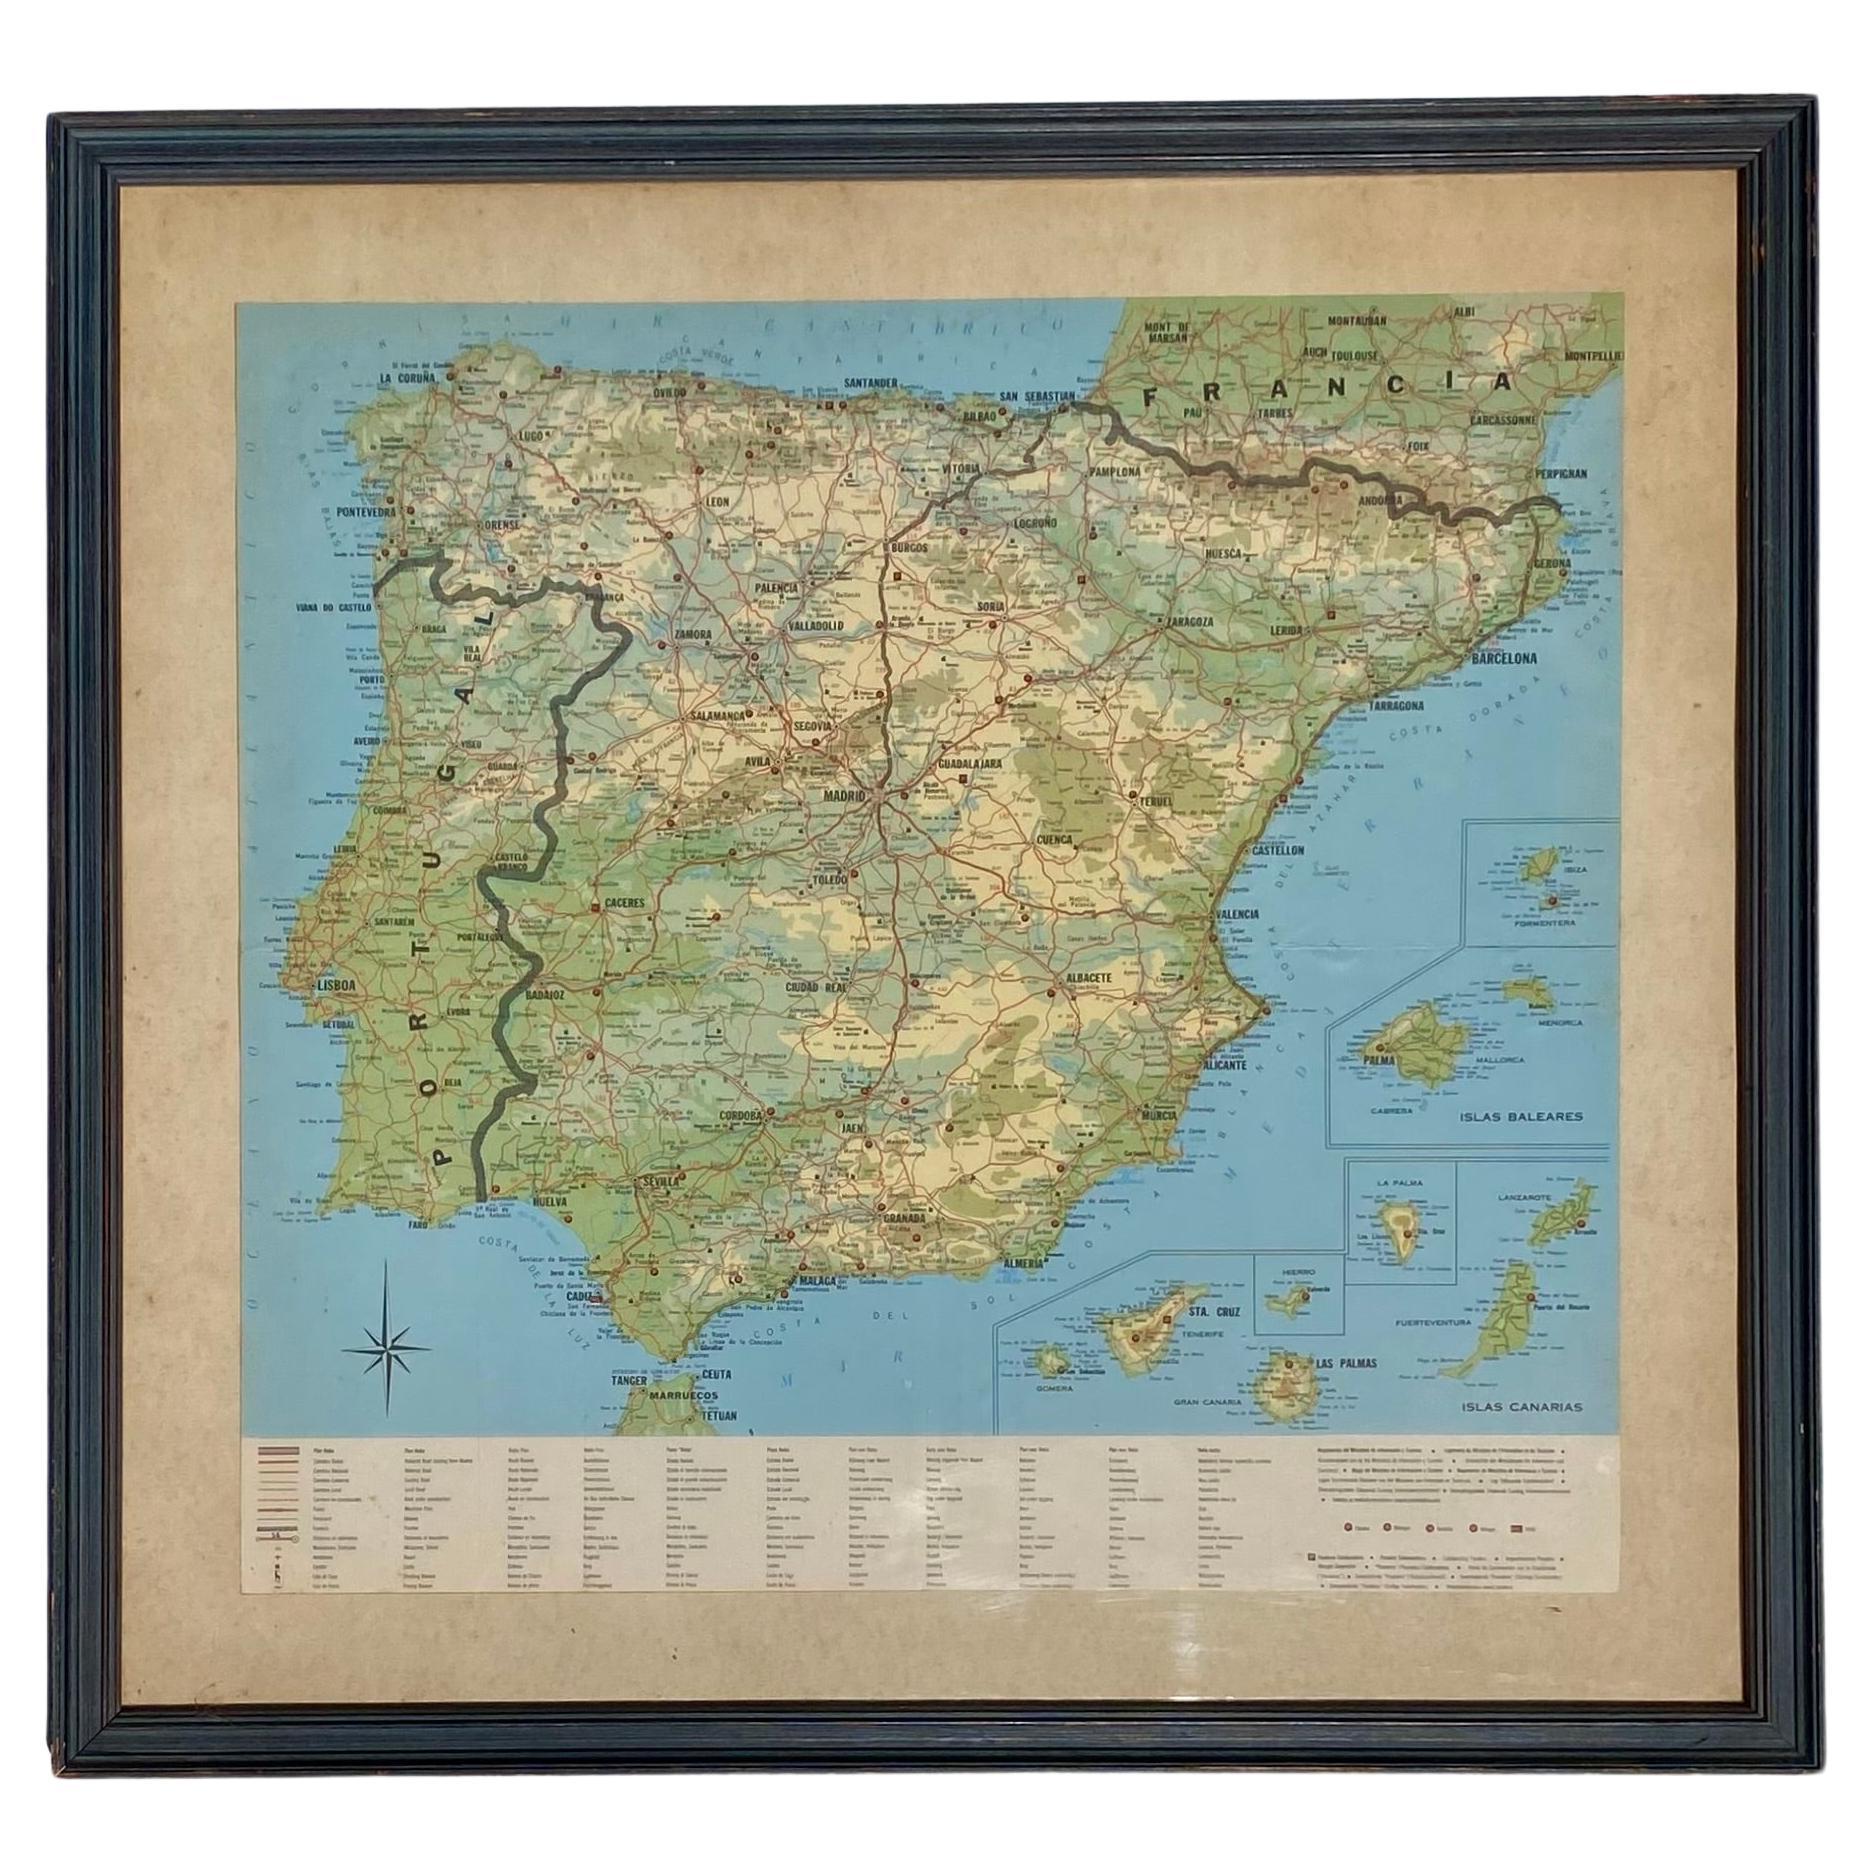 Impression vintage encadrée de l'Espagne, des îles Canaries et du Portugal, encadrée